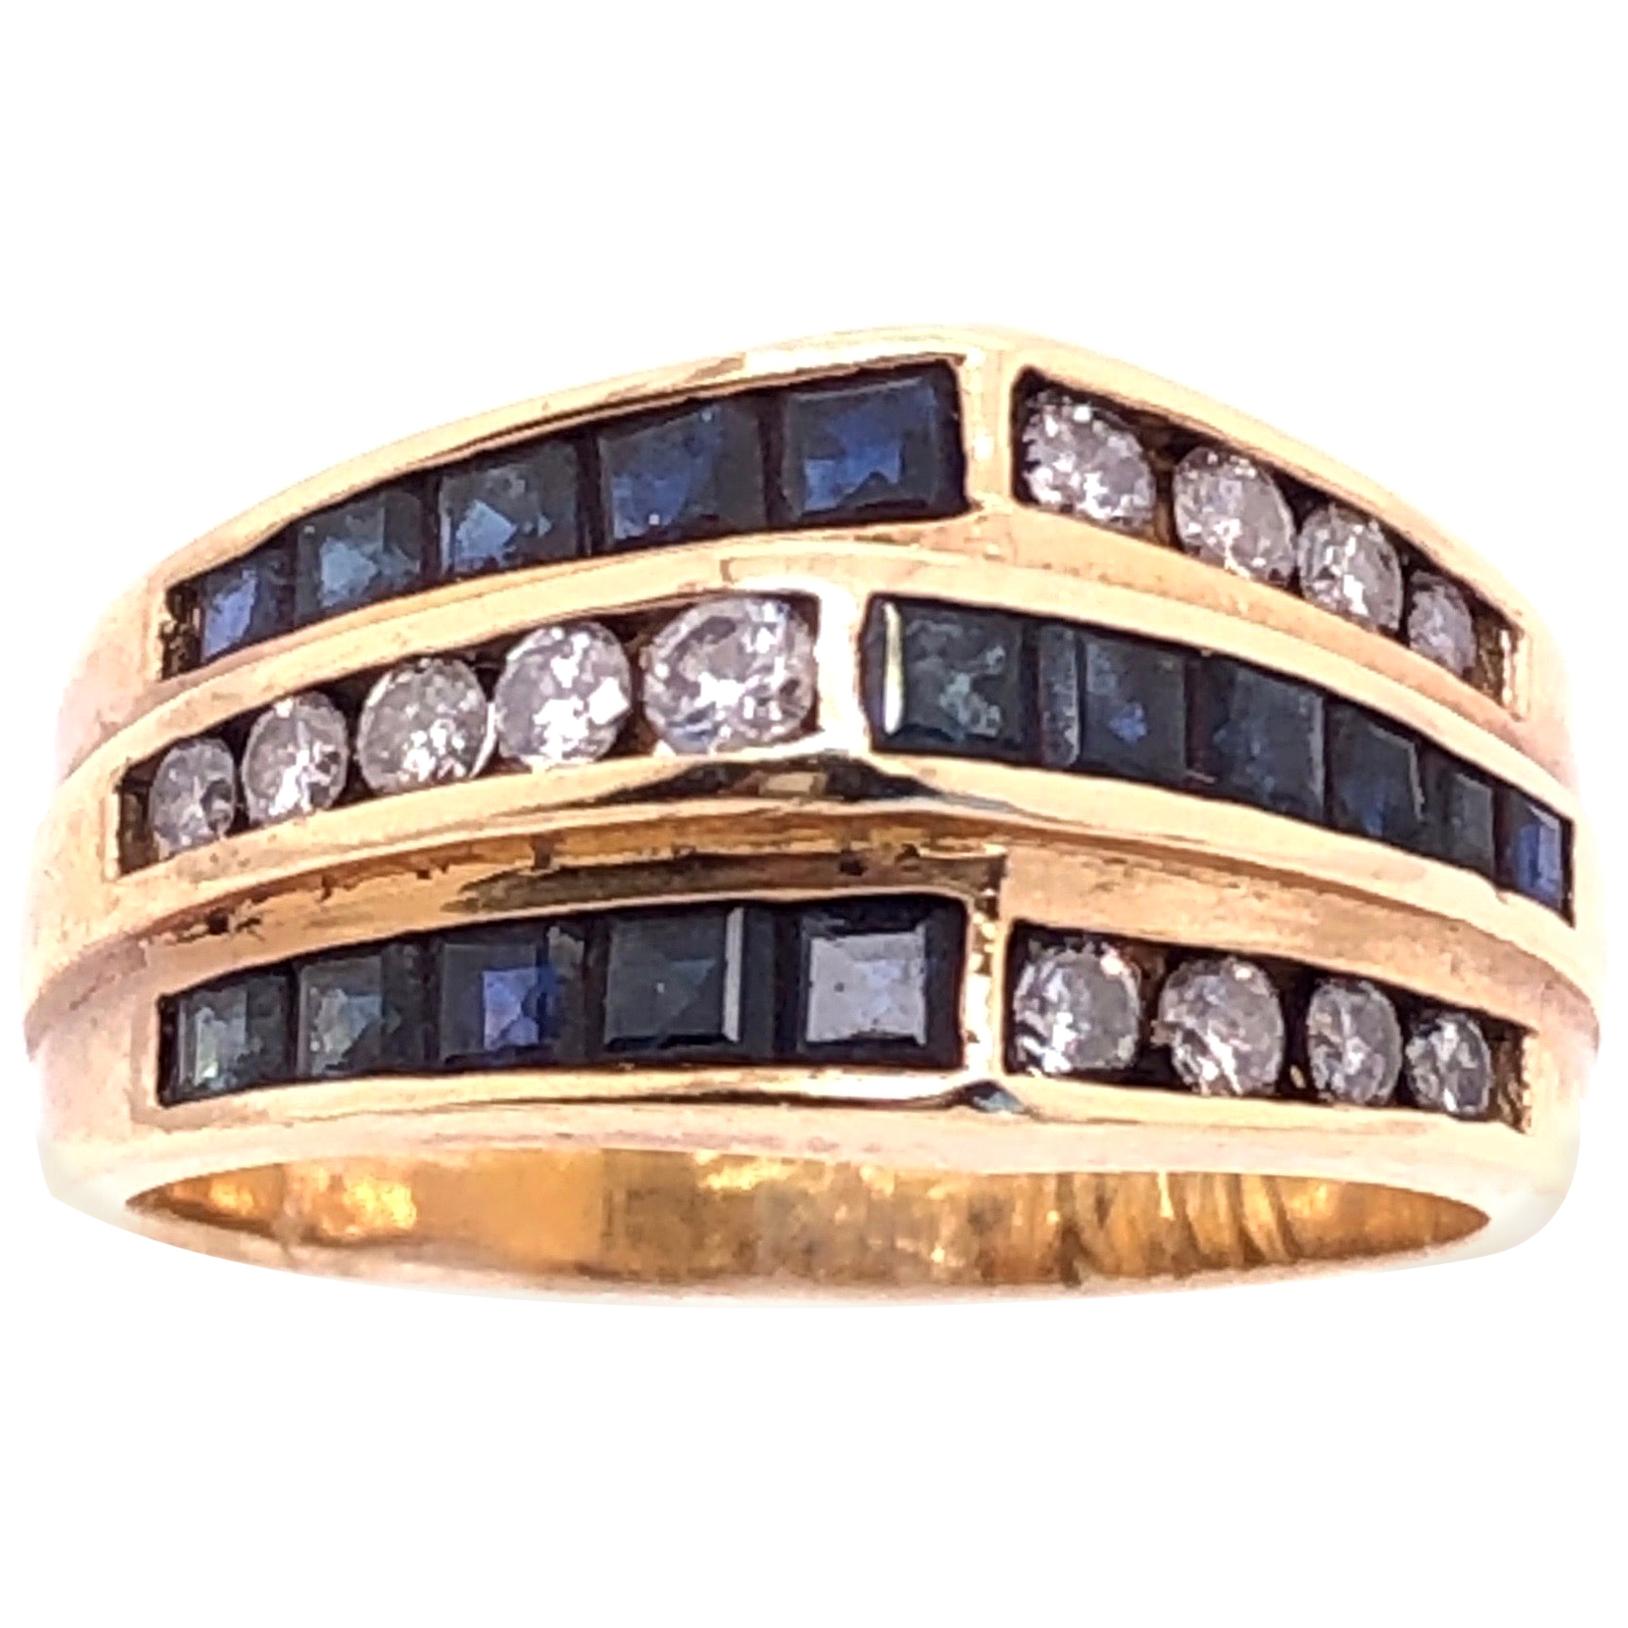 Dreistöckiger Ring aus 14 Karat Gelbgold mit Saphiren und Diamanten